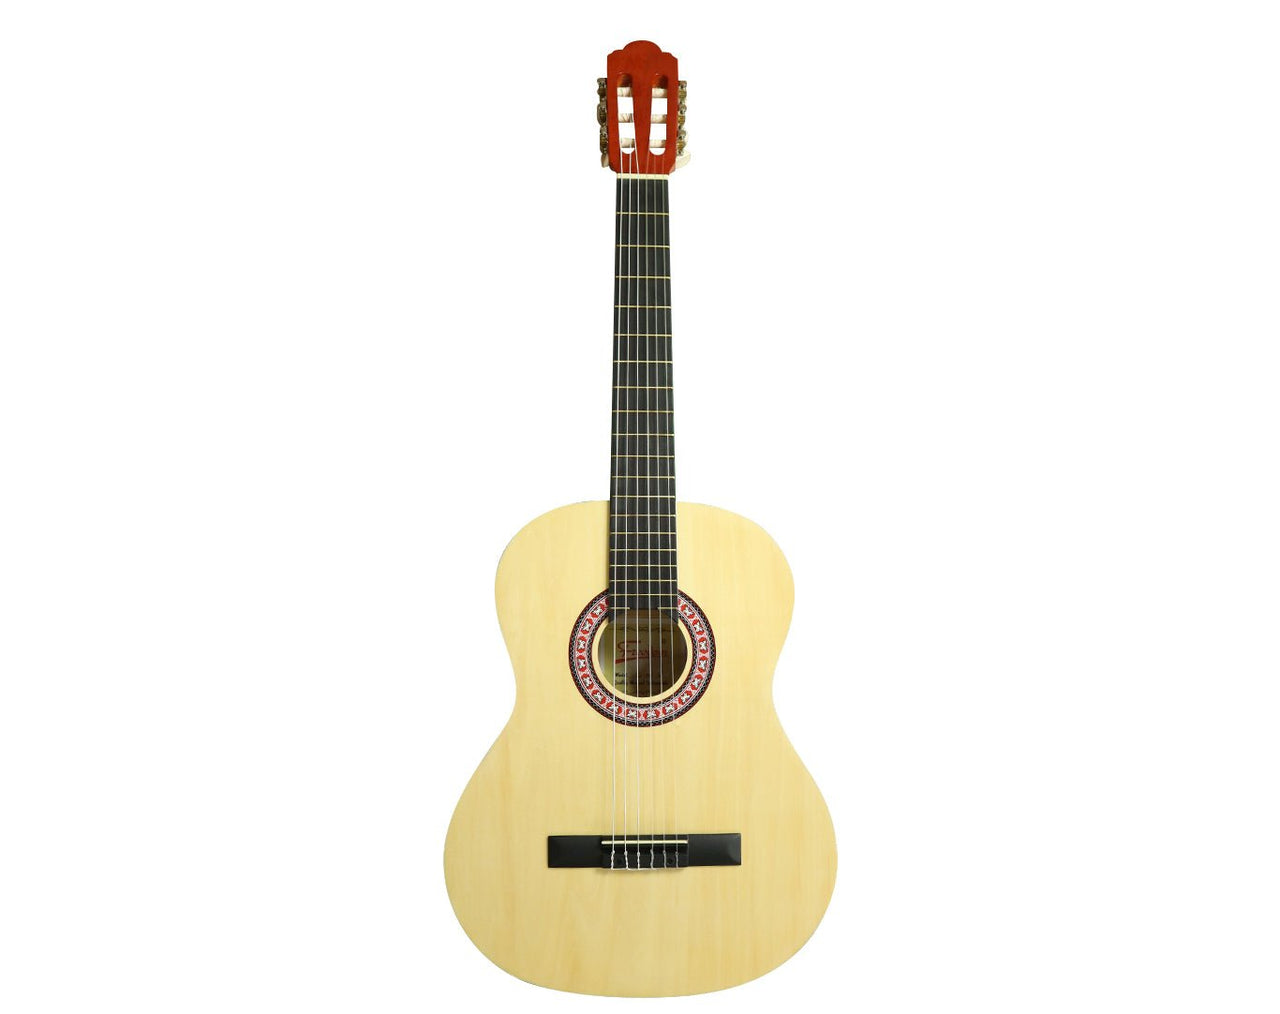 39" Classic Acoustic Guitar Nylon Strings Natural CG-500N